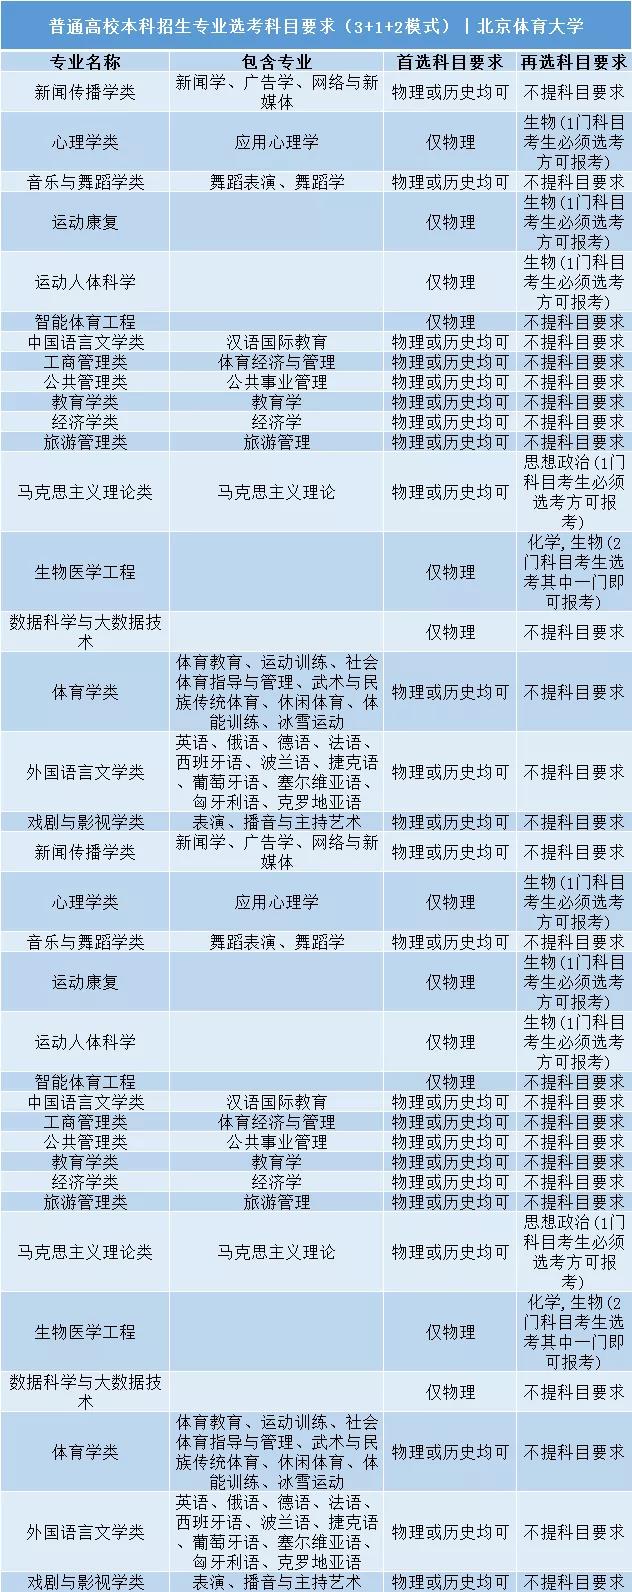 北京體育大學普通高校本科招生專業選考科目要求3+1+2模式